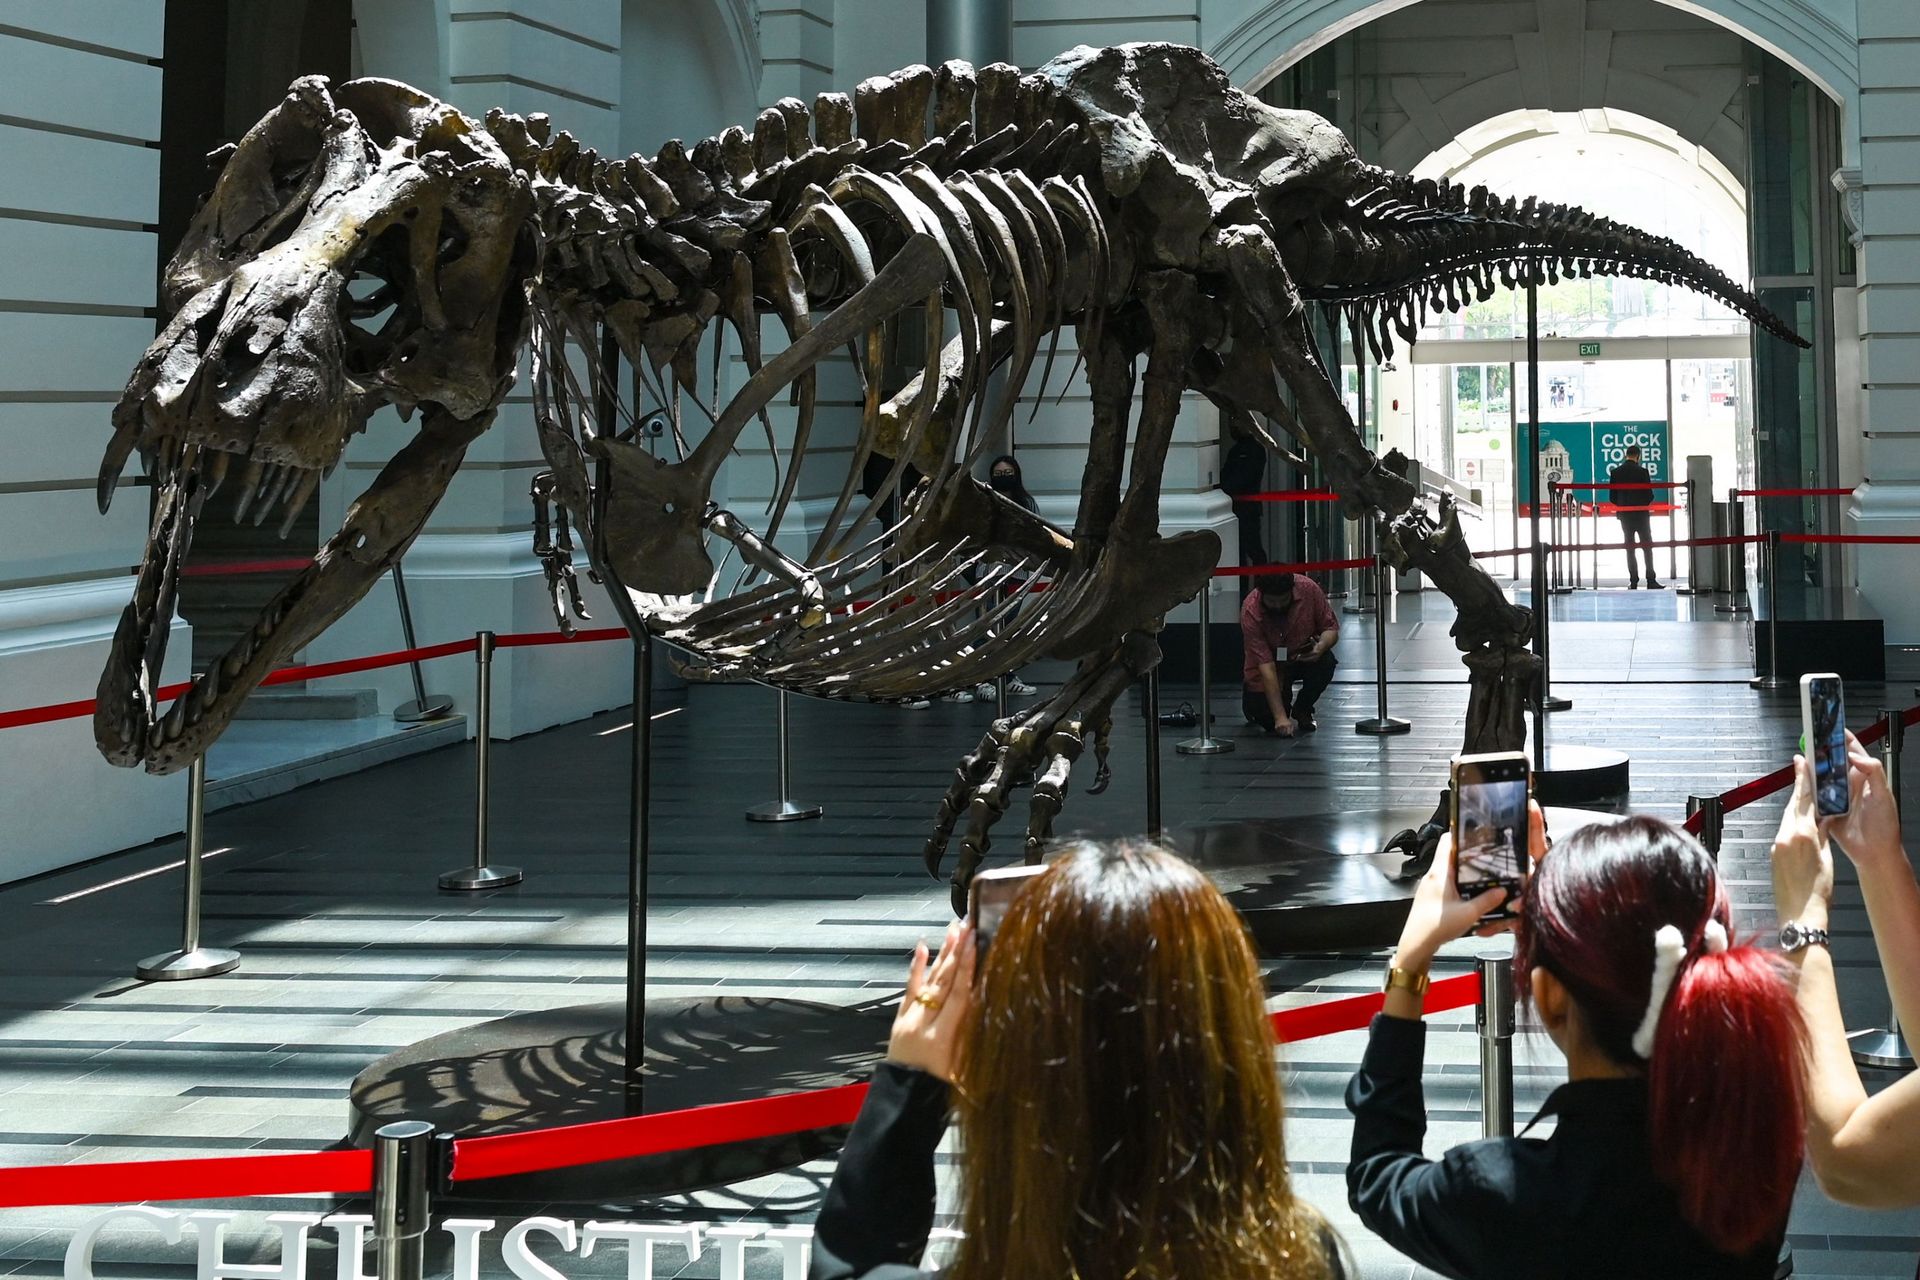 Vente aux enchères: 6,1 millions de dollars pour un squelette de dinosaure  - Le Soir